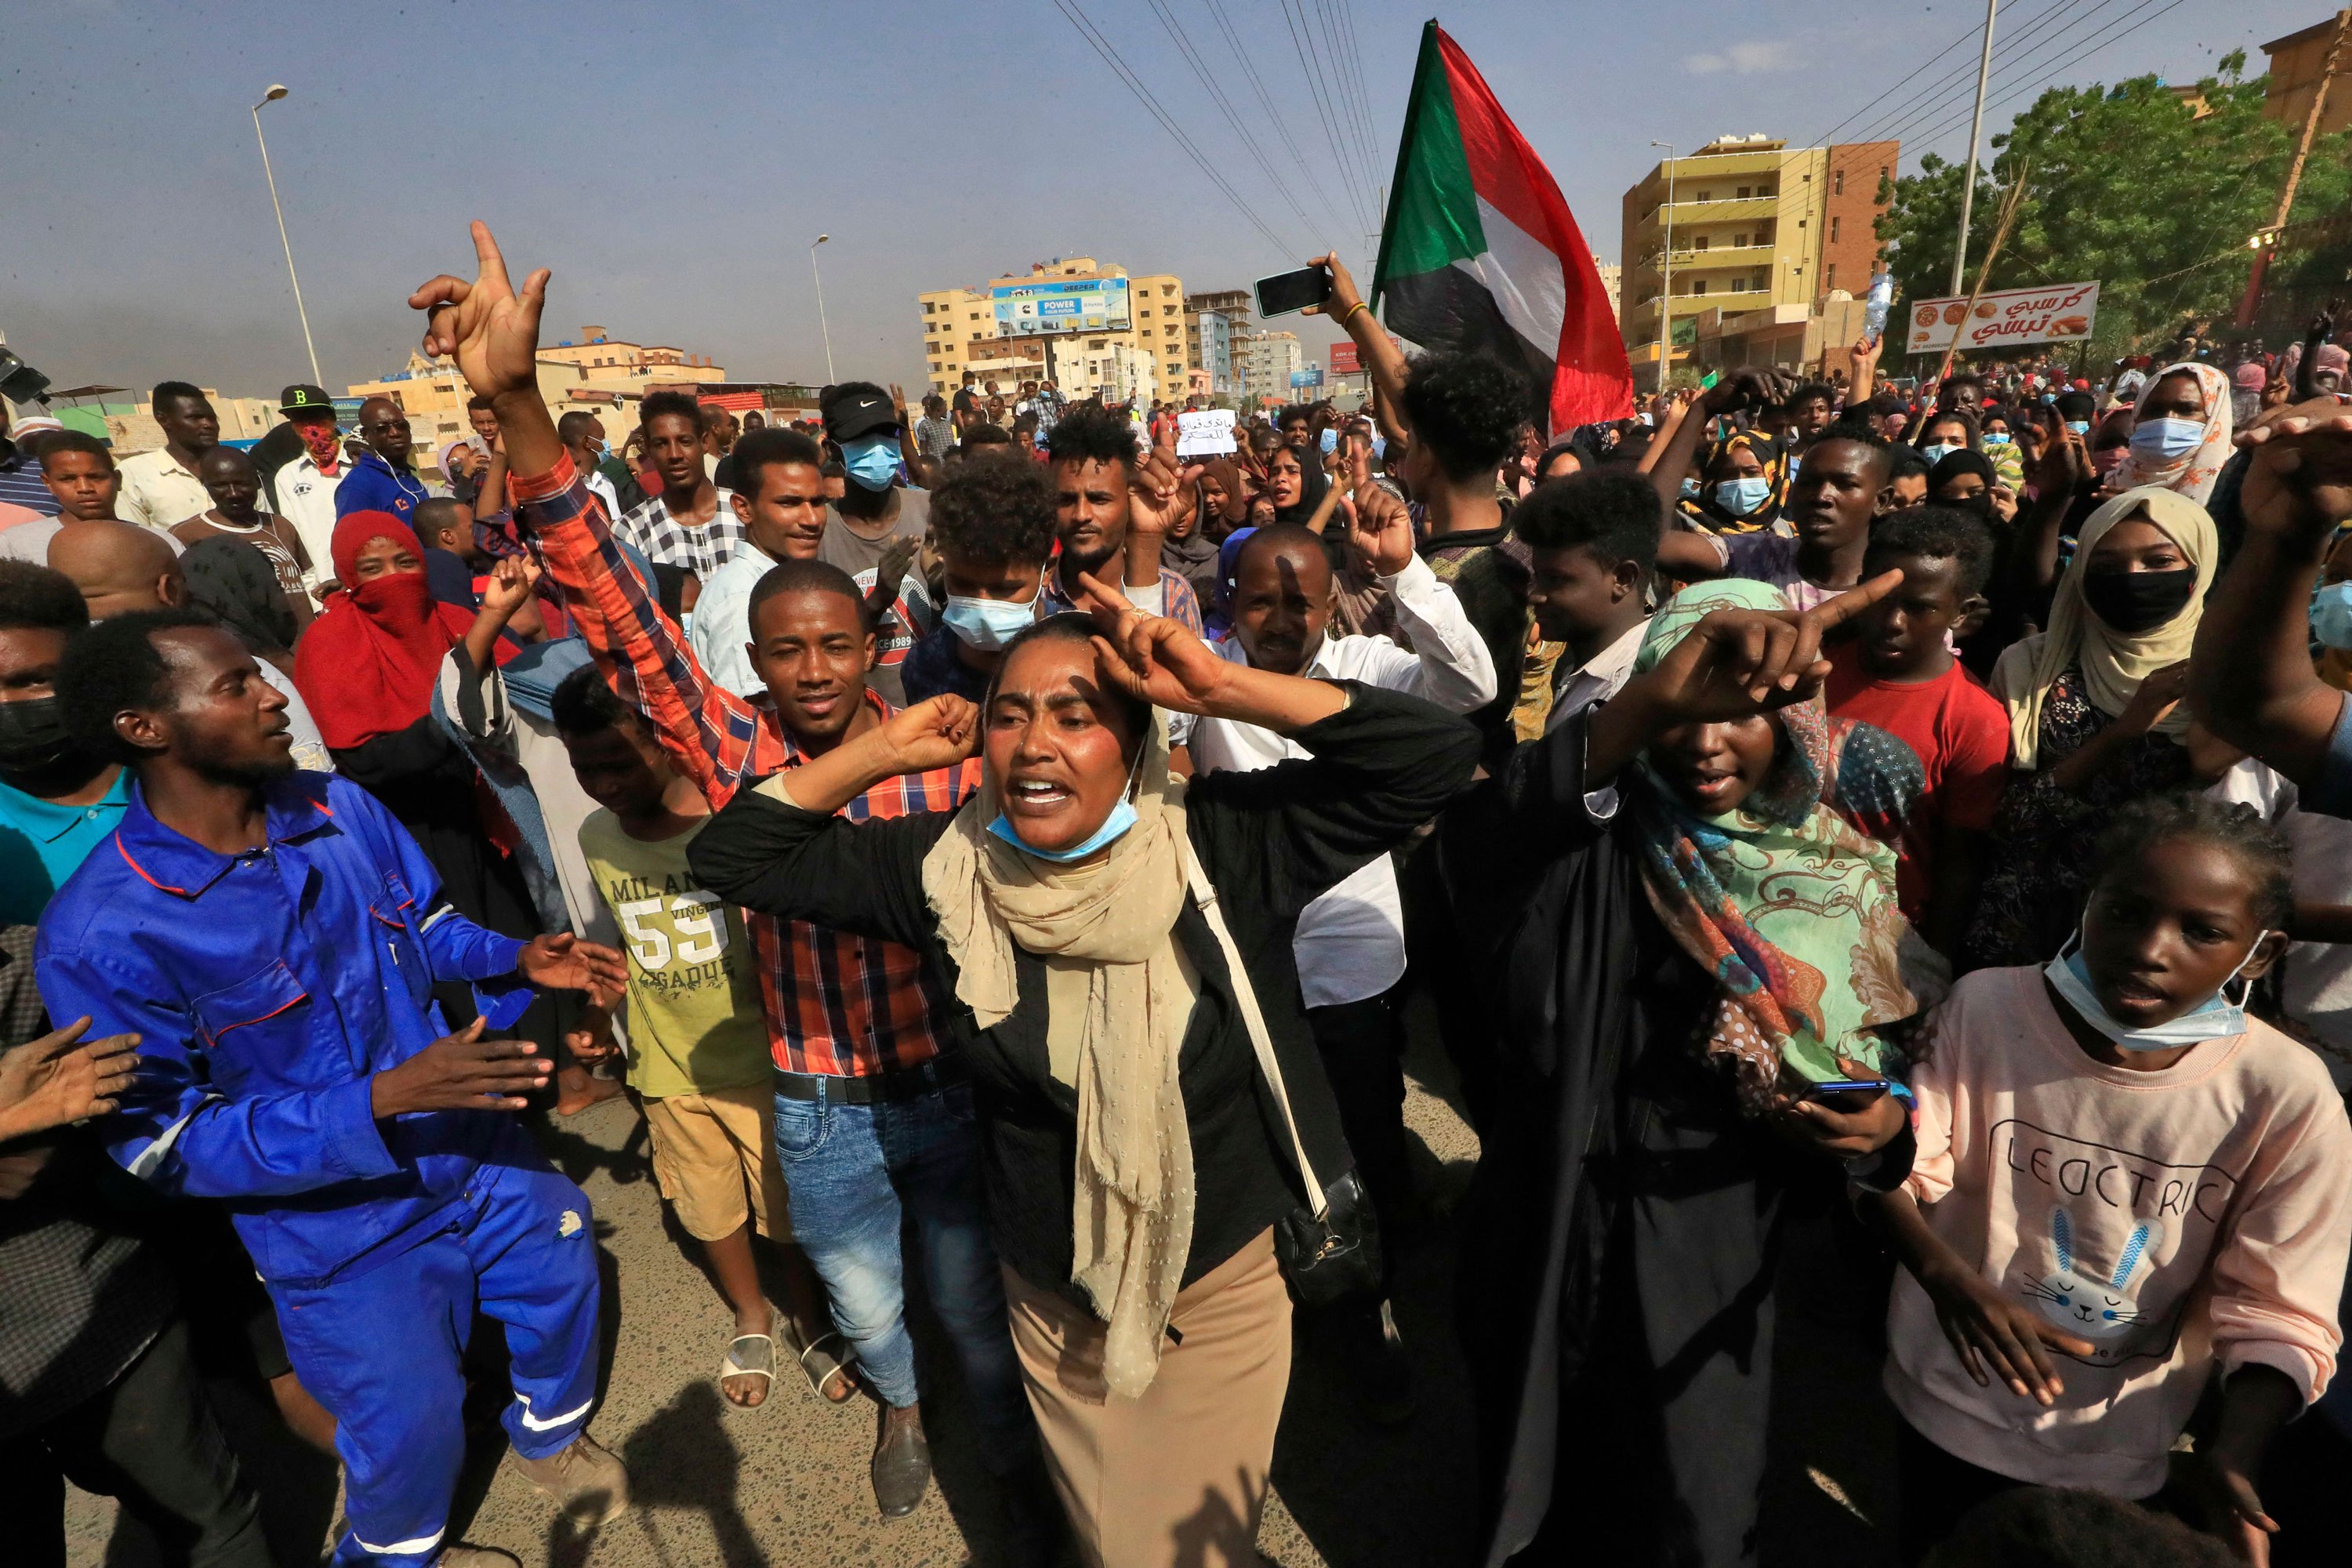 304e61f5 df90 4551 8cd8 e78b2416a9cd - Le Premier ministre soudanais détenu dans le cadre d'une prise de pouvoir militaire